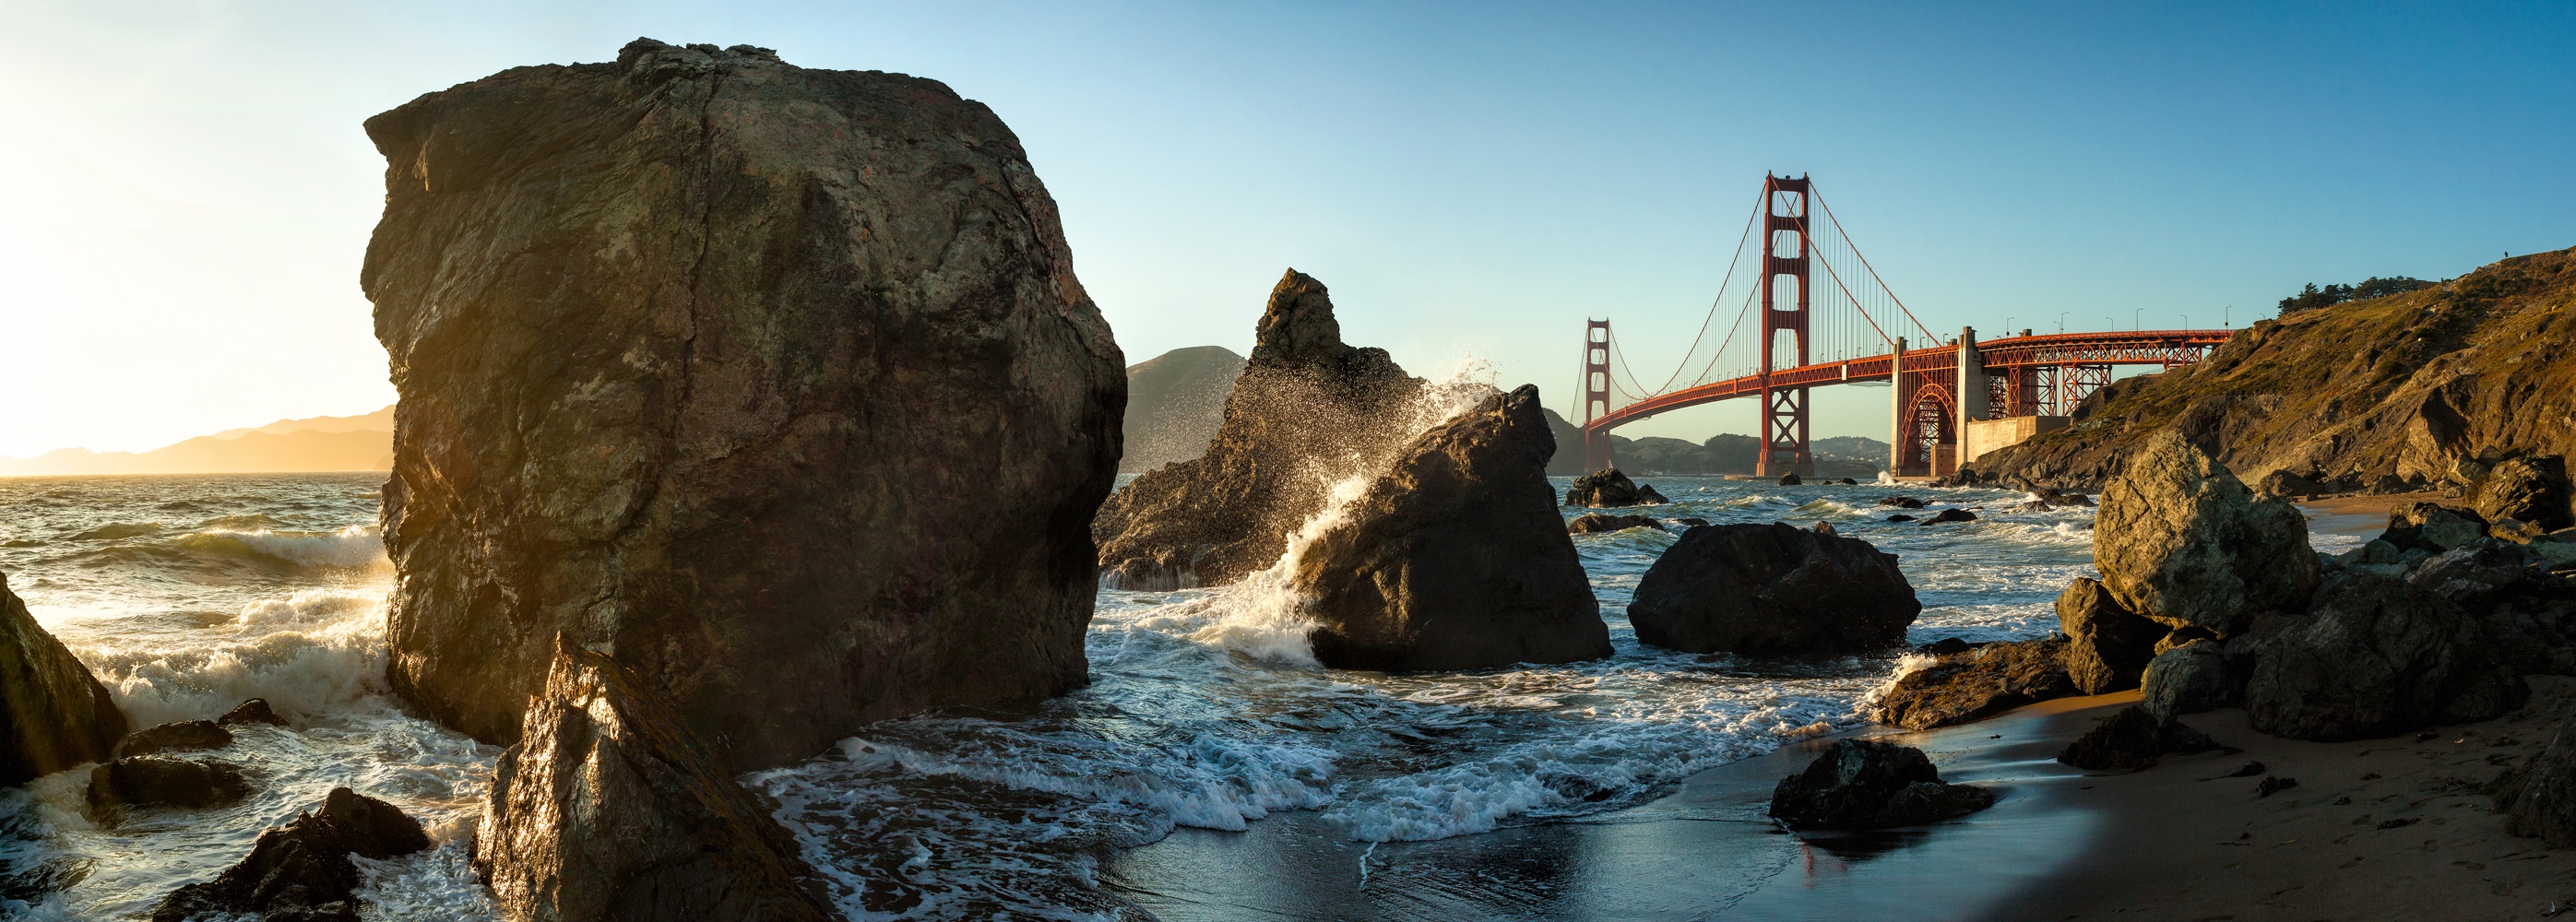 Billede af The Golden Gate Bridge